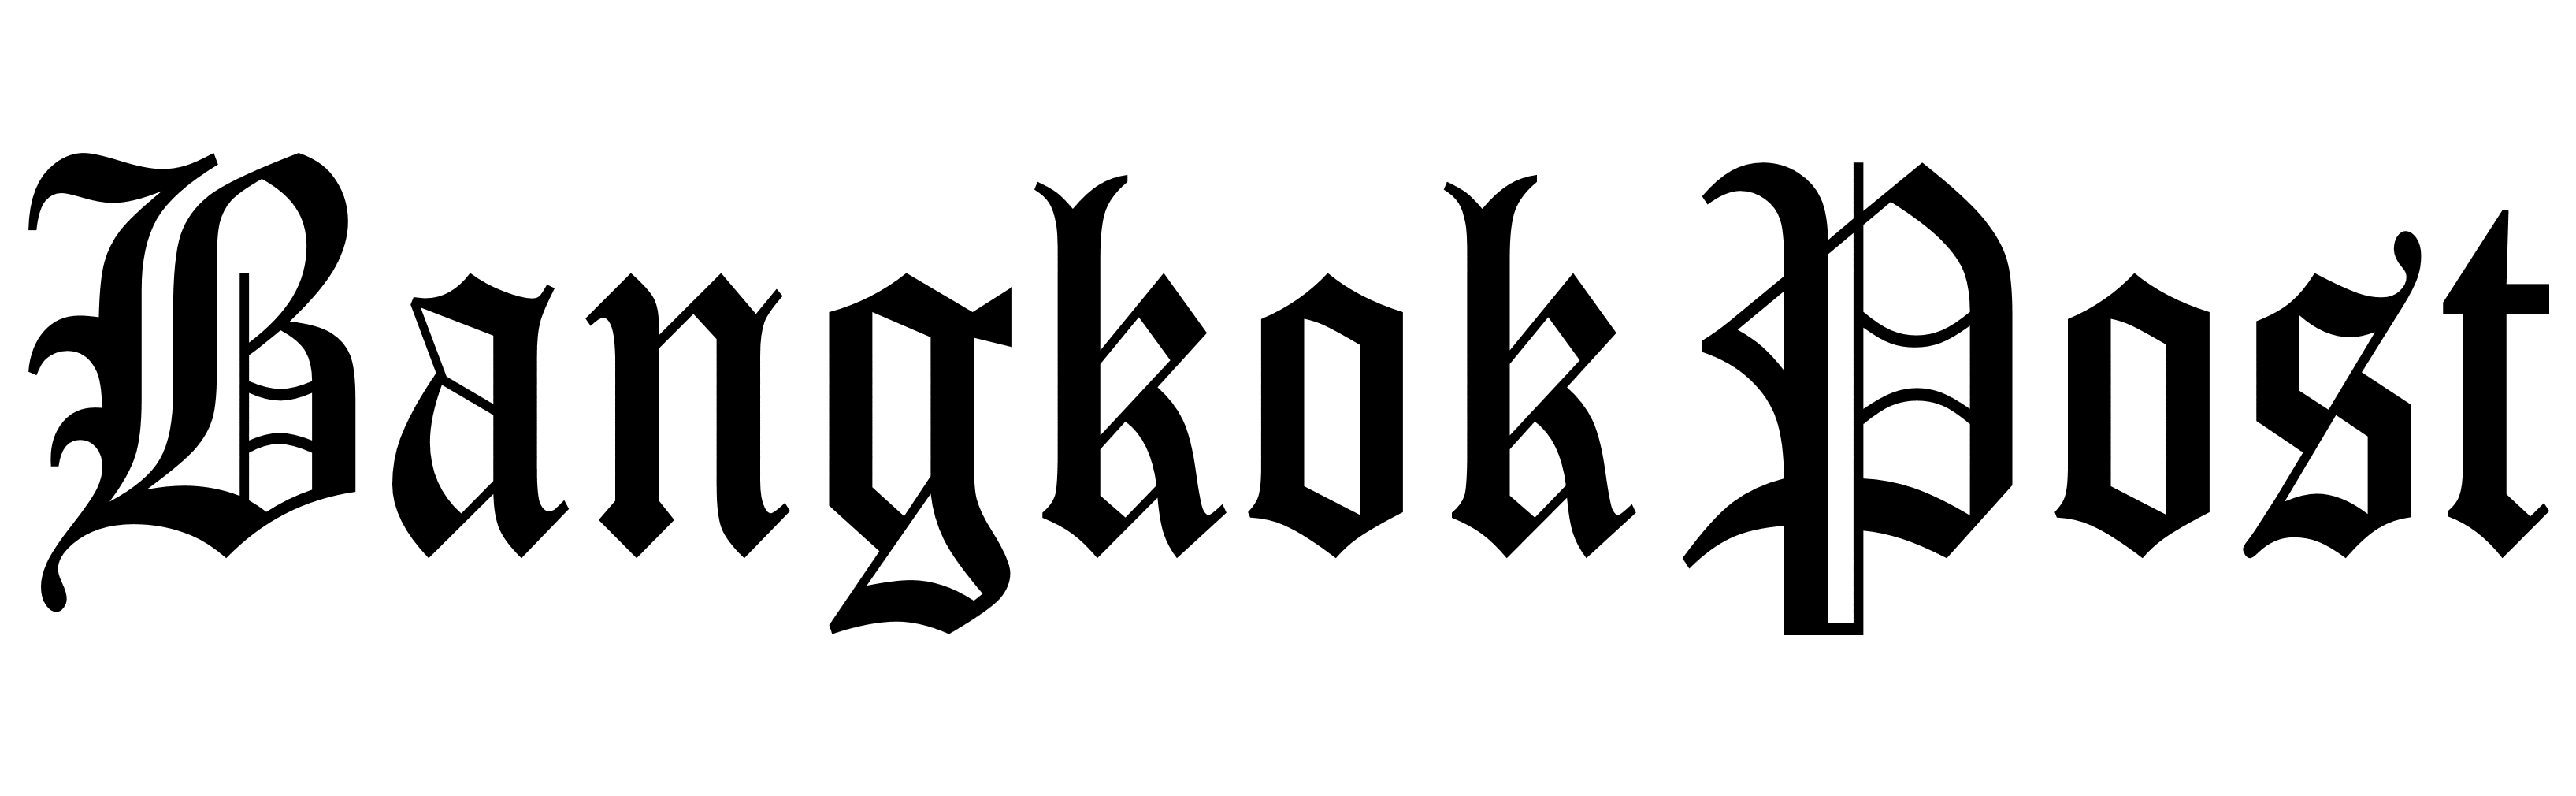 Bangkok Post logo, logotype